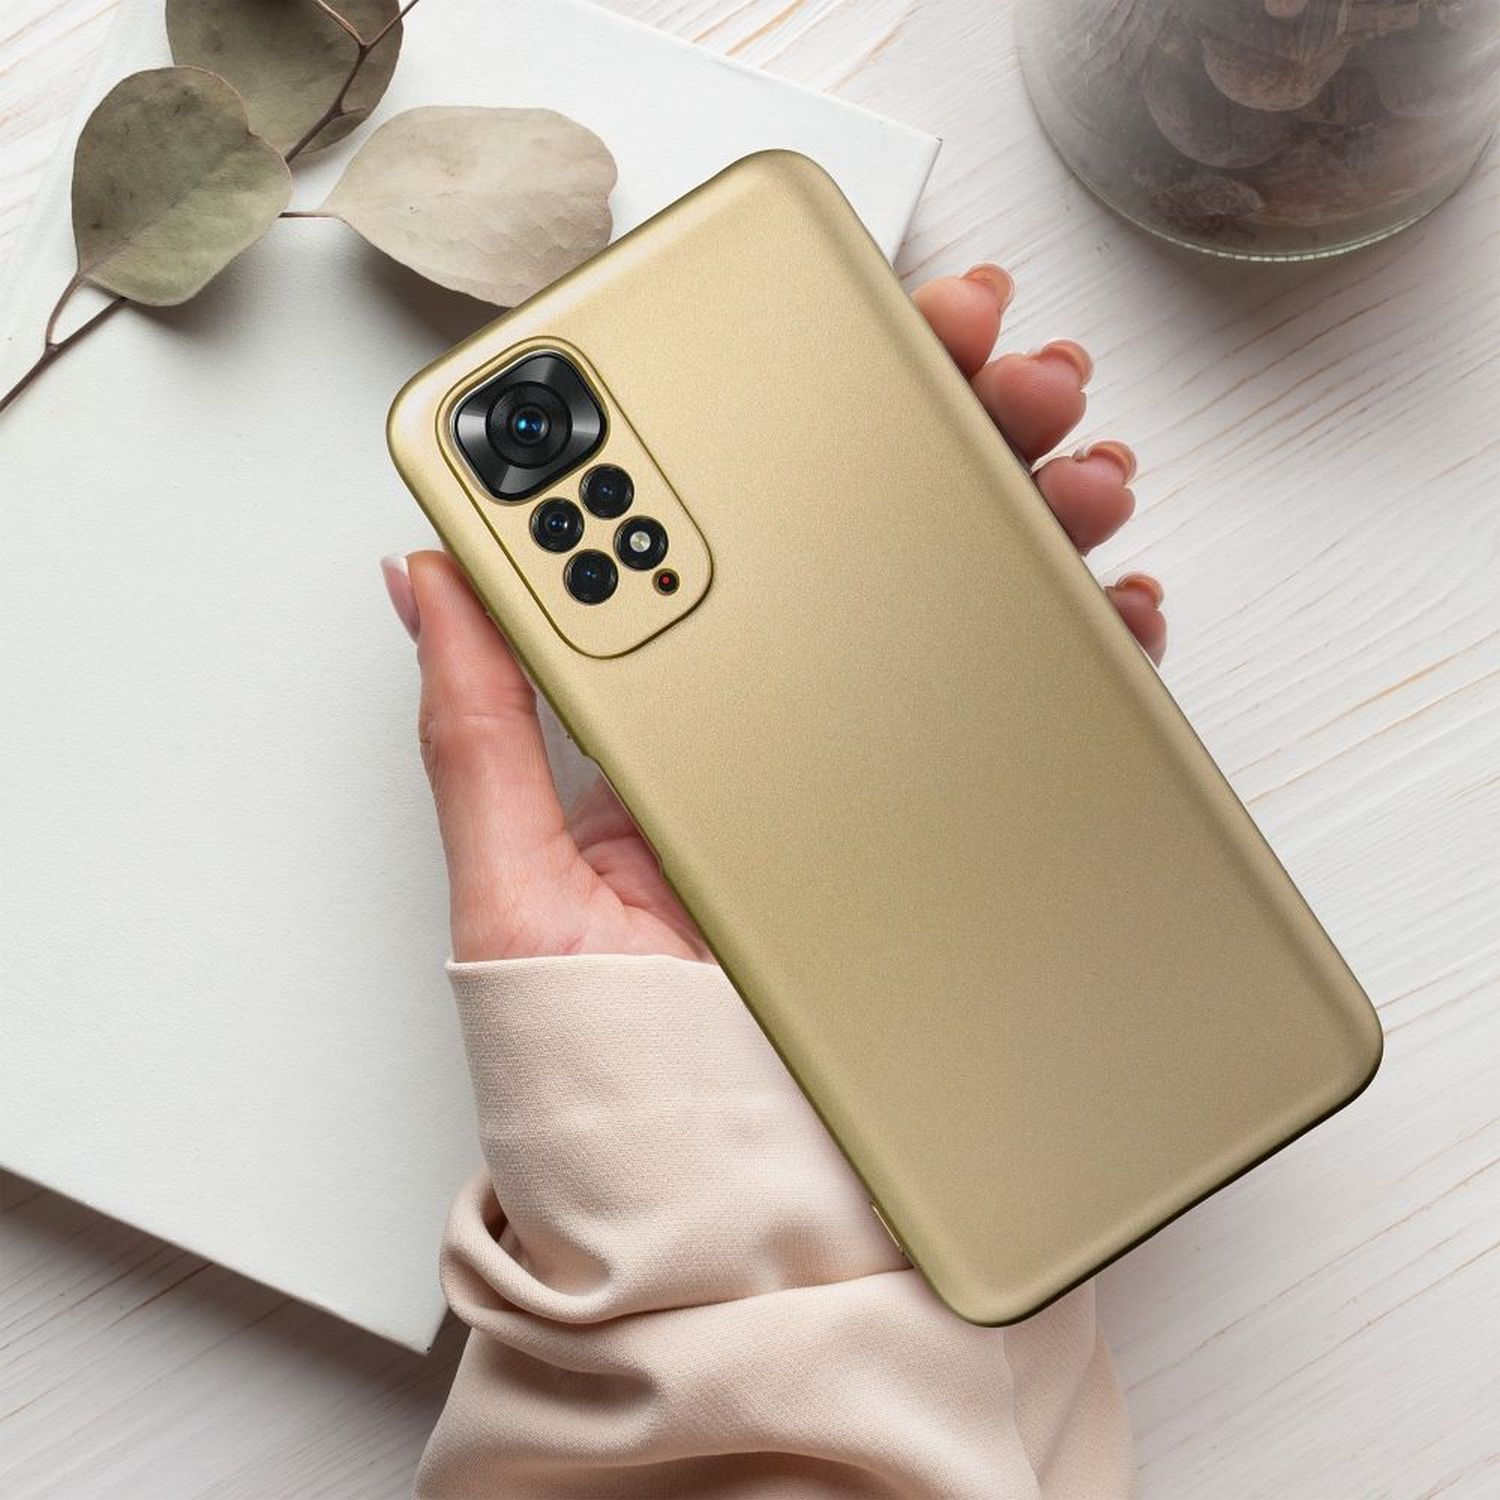 COFI Galaxy Samsung, A52 Gold Metallic Backcover, Case, 4G,